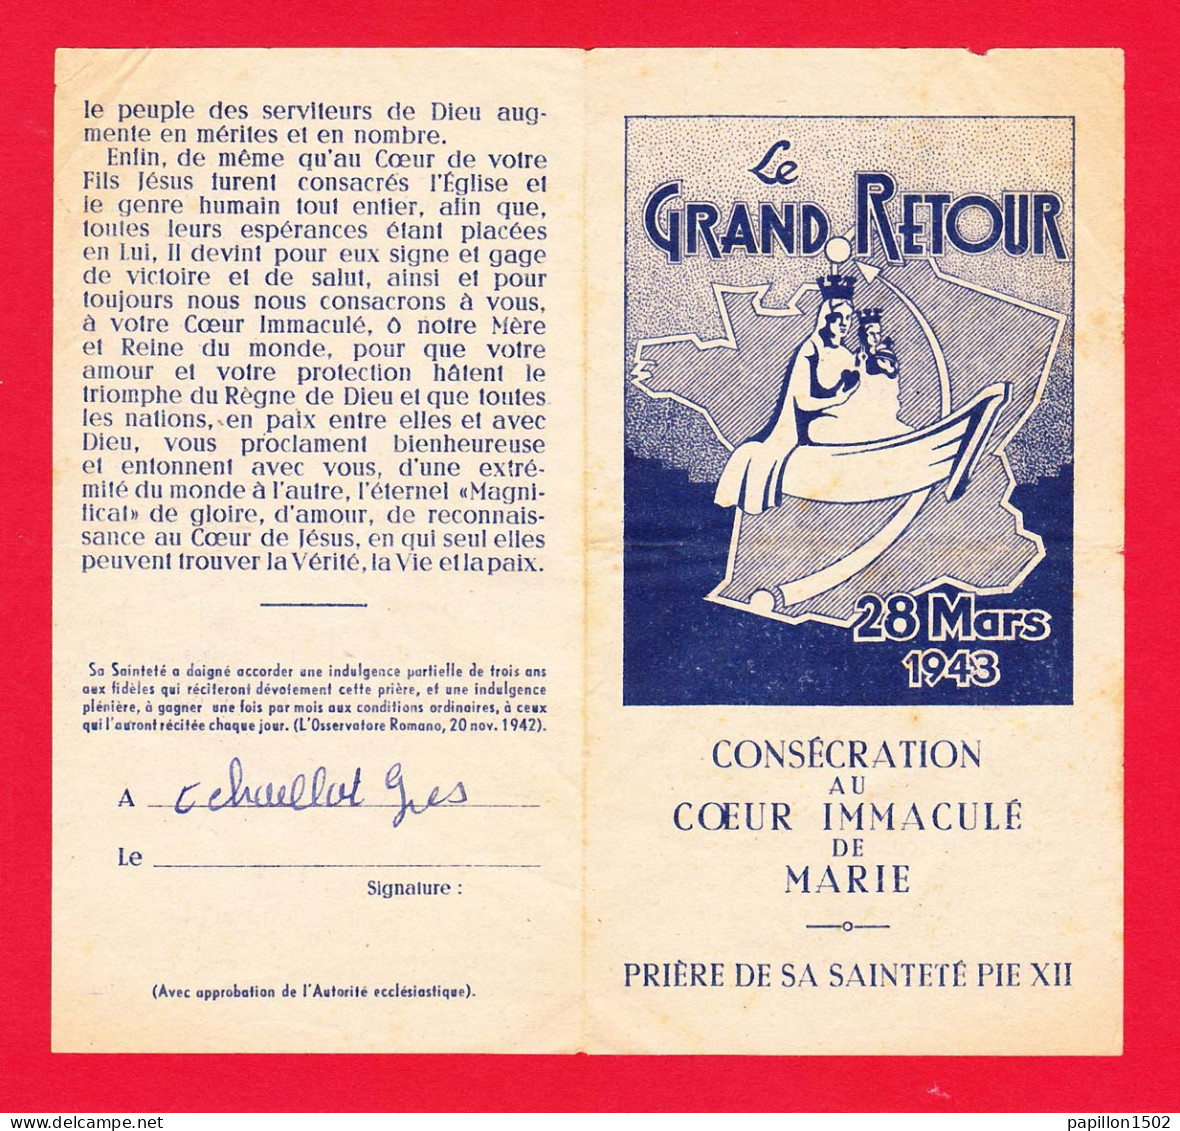 Religion-34P6 Le Grand Retour, 28 Mars 1943, Prière De Sa Sainteté PIE XII - Papi